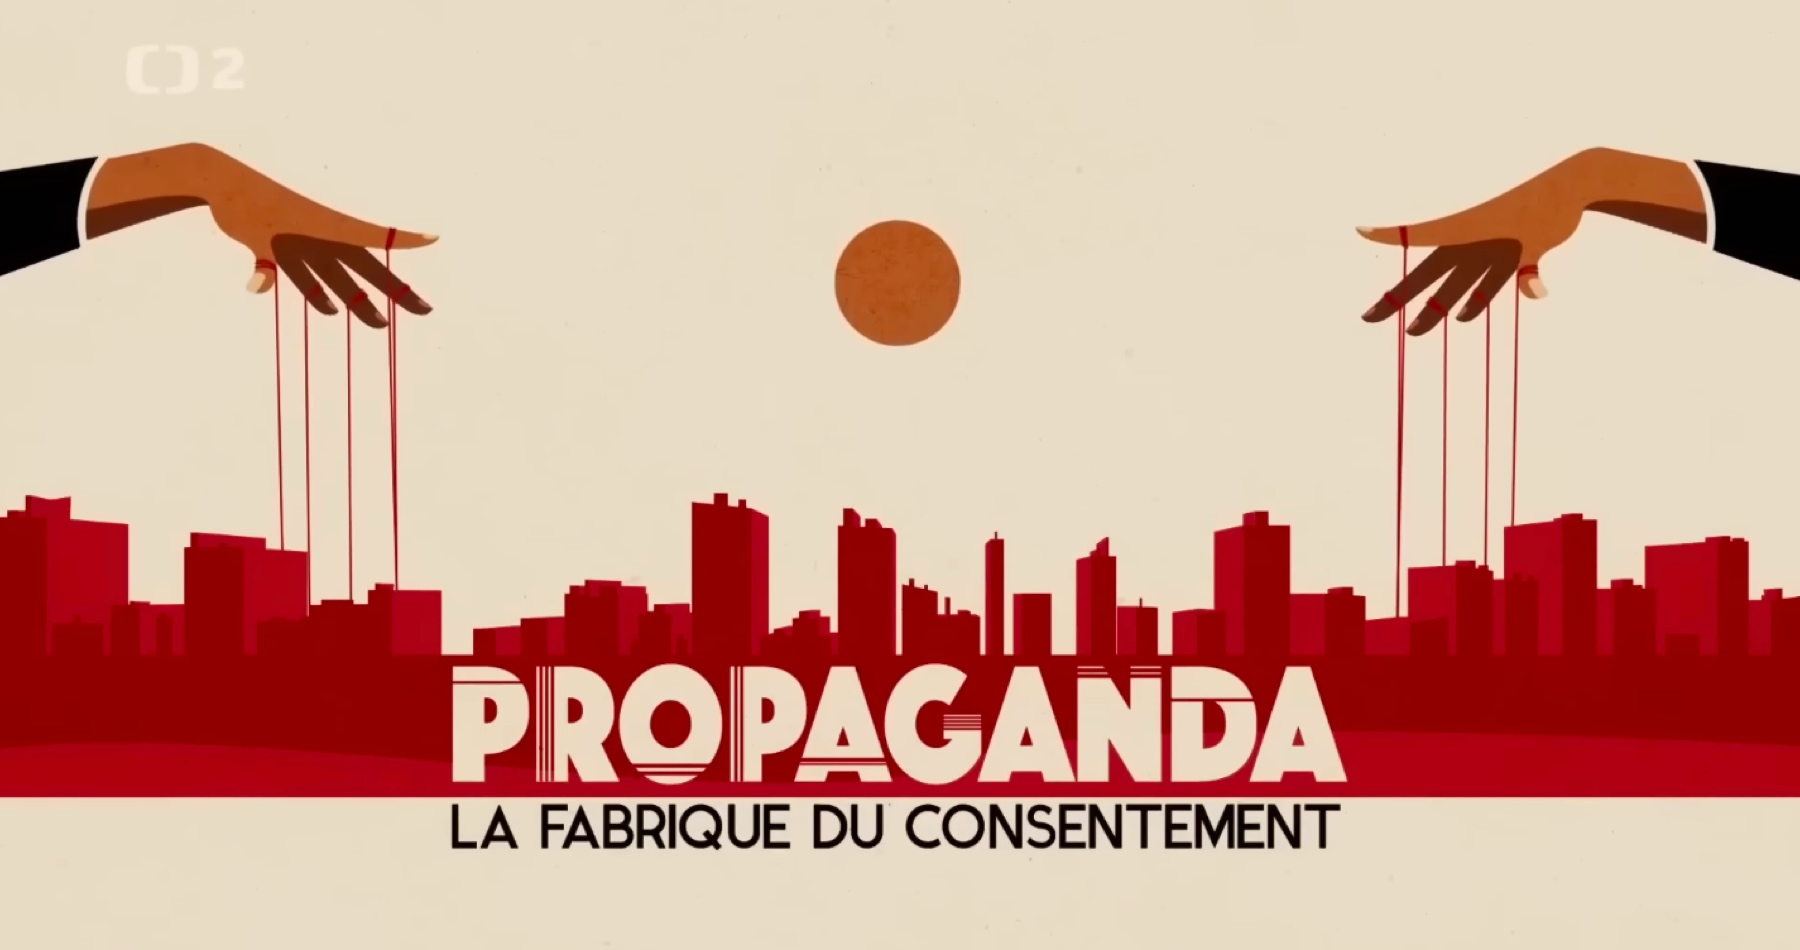 VIDEO: Propaganda - továreň na súhlas (francúzsky dokumentárny film o formovaní verejnej mienky)